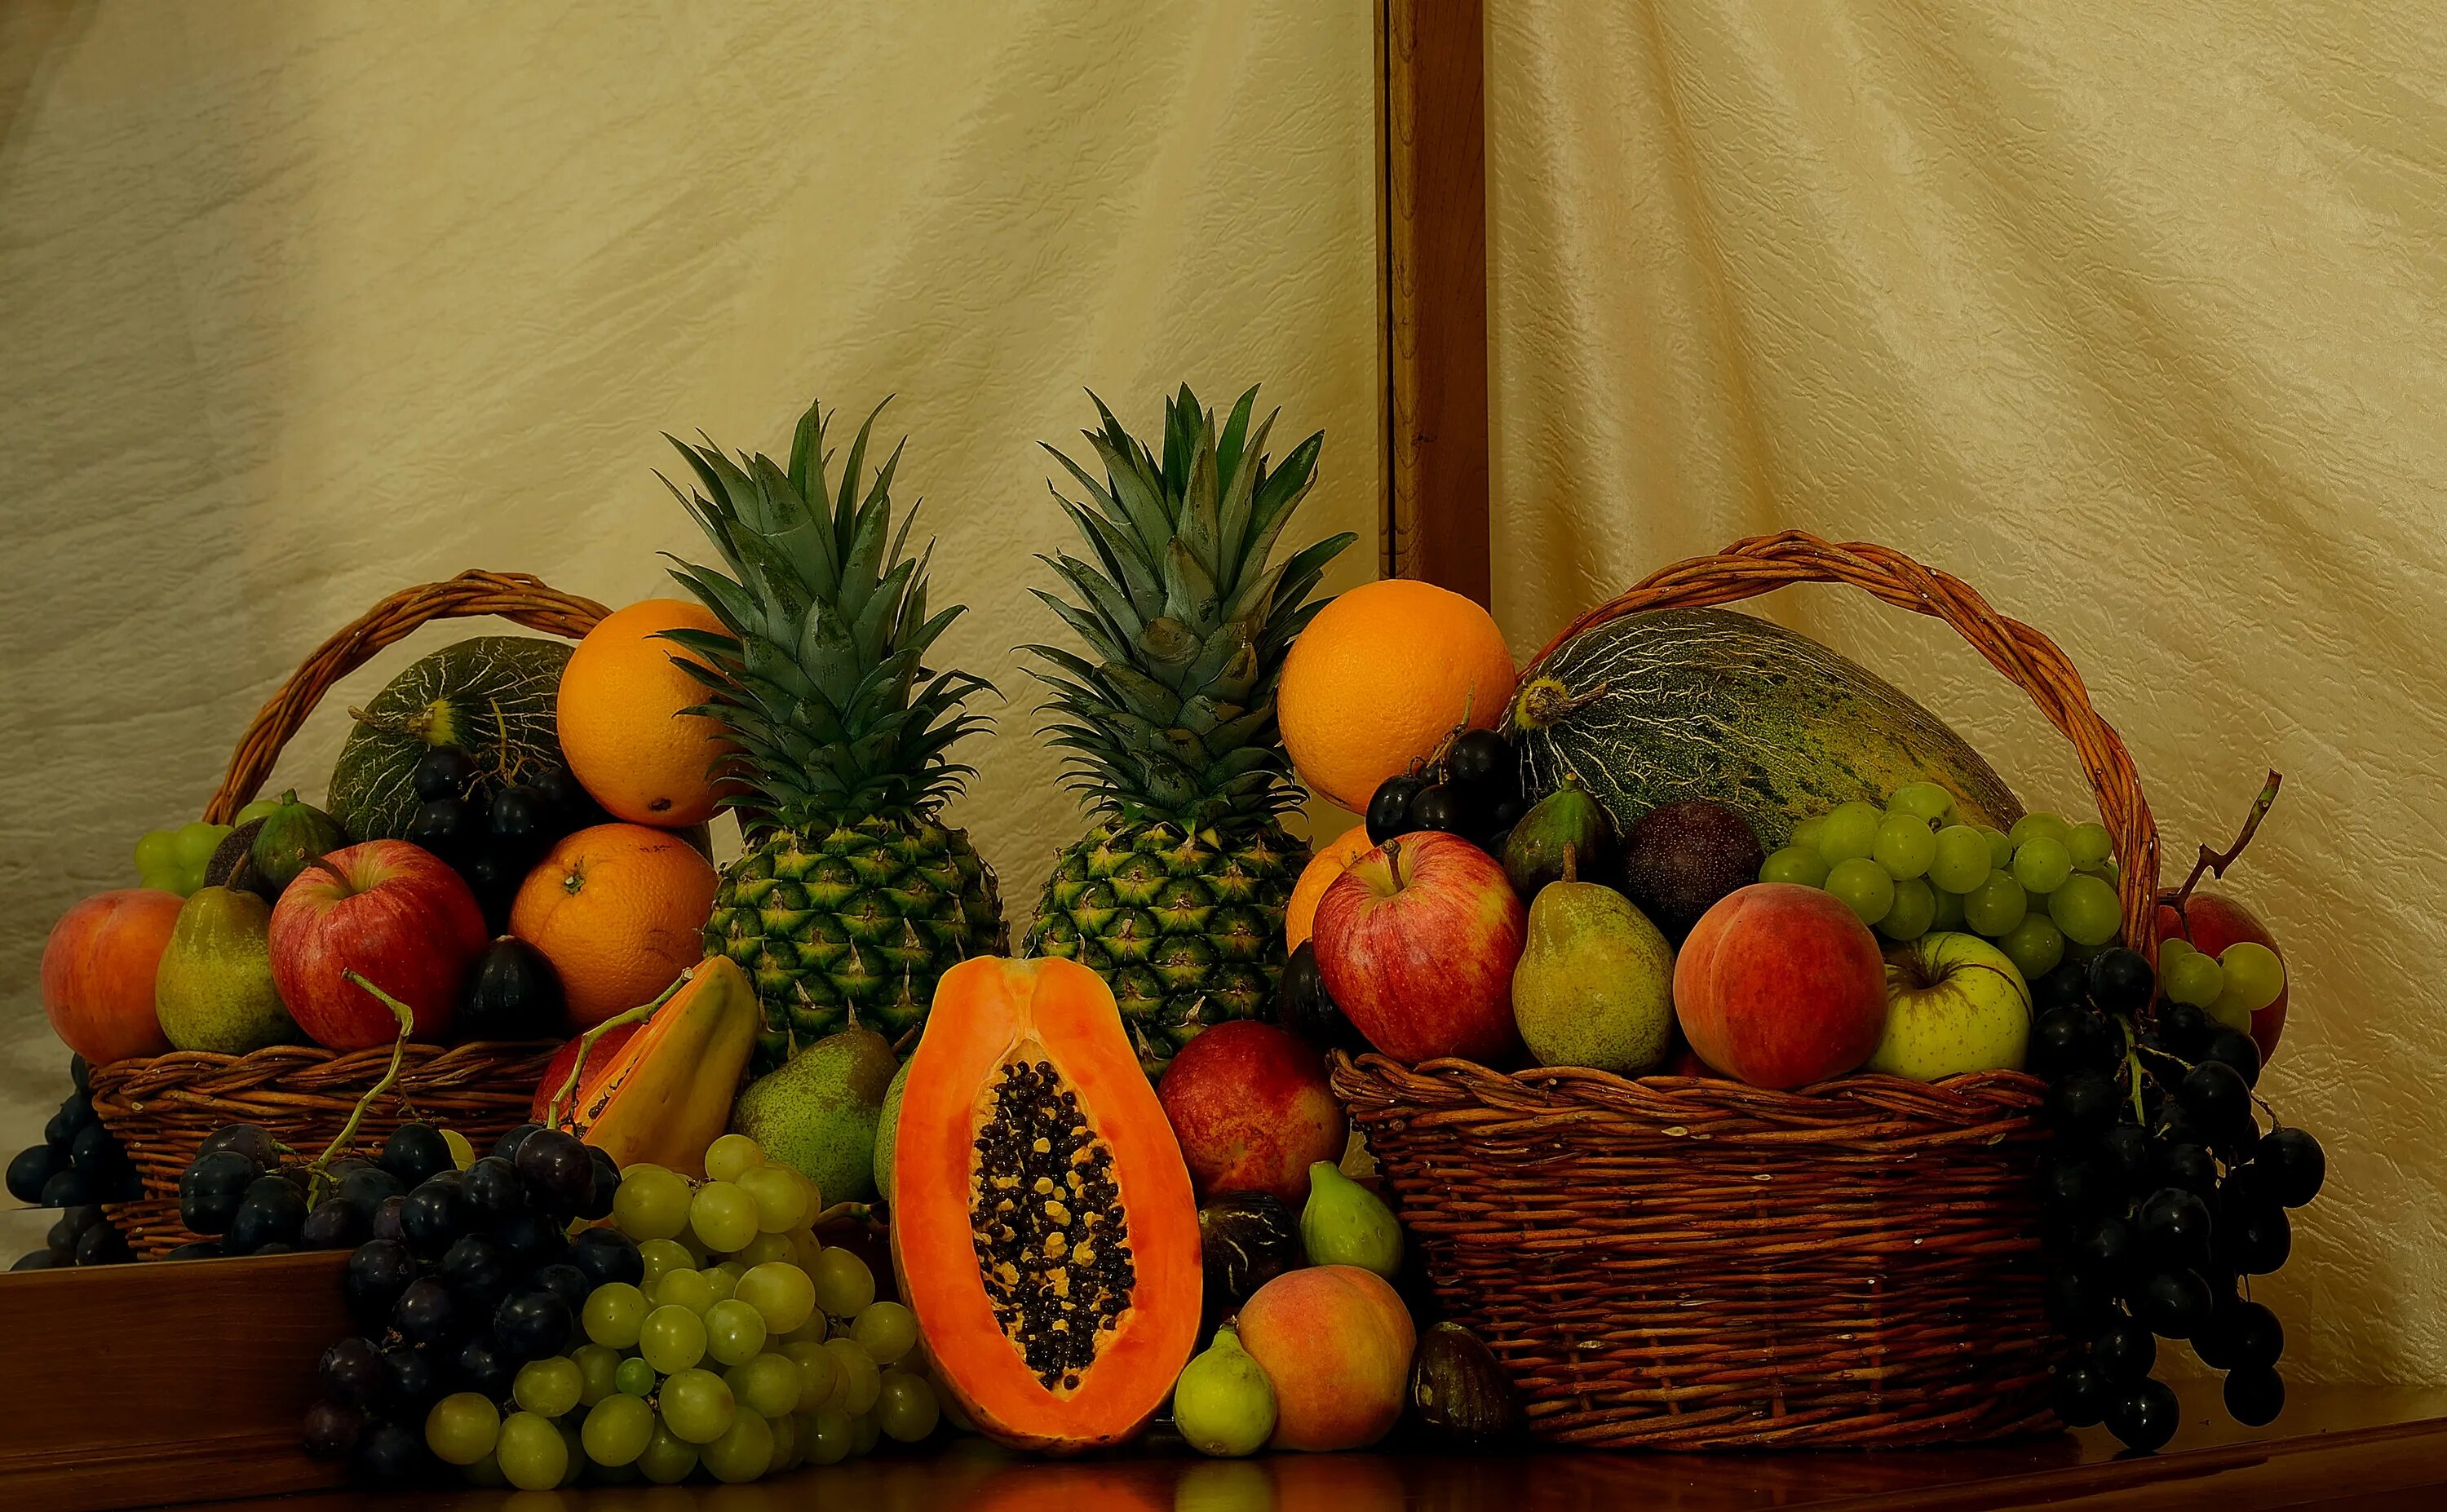 Фрукты. Фрукты на столе. Корзина с овощами и фруктами. Корзина фруктов на столе. 2 11 всех фруктов составляют персики